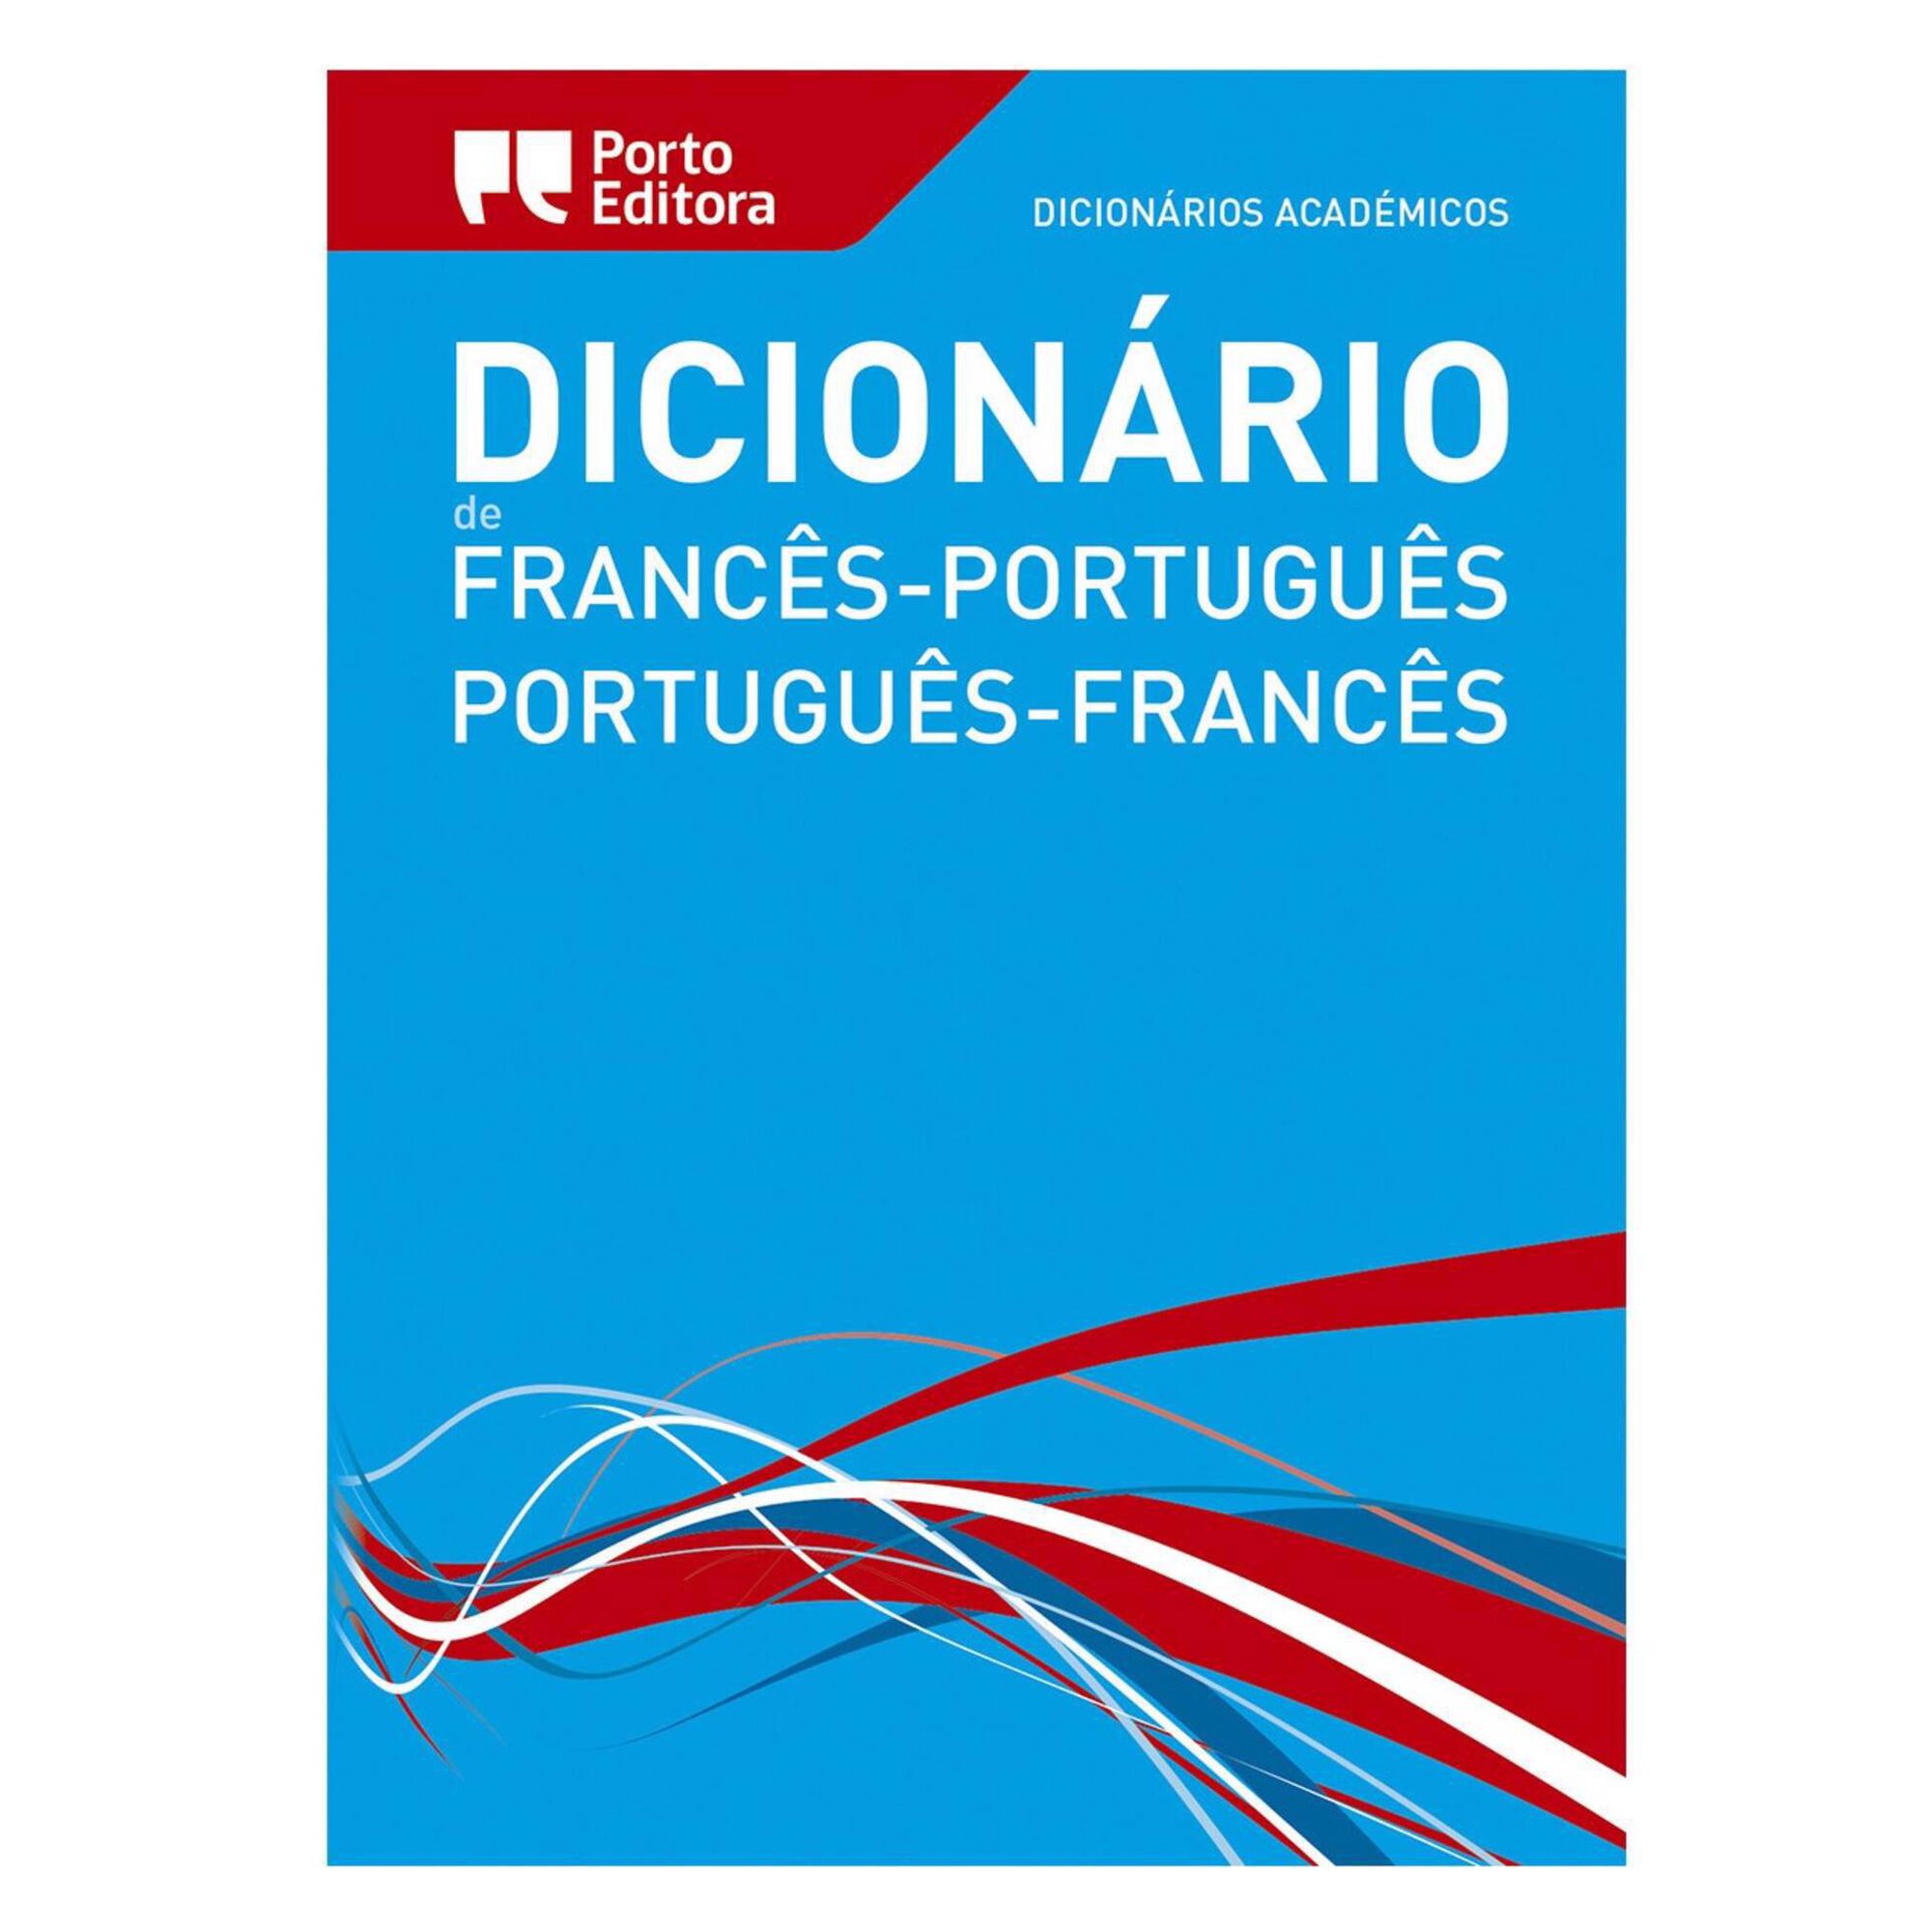 Dicionário Académico Português-Francês/Francês-Português